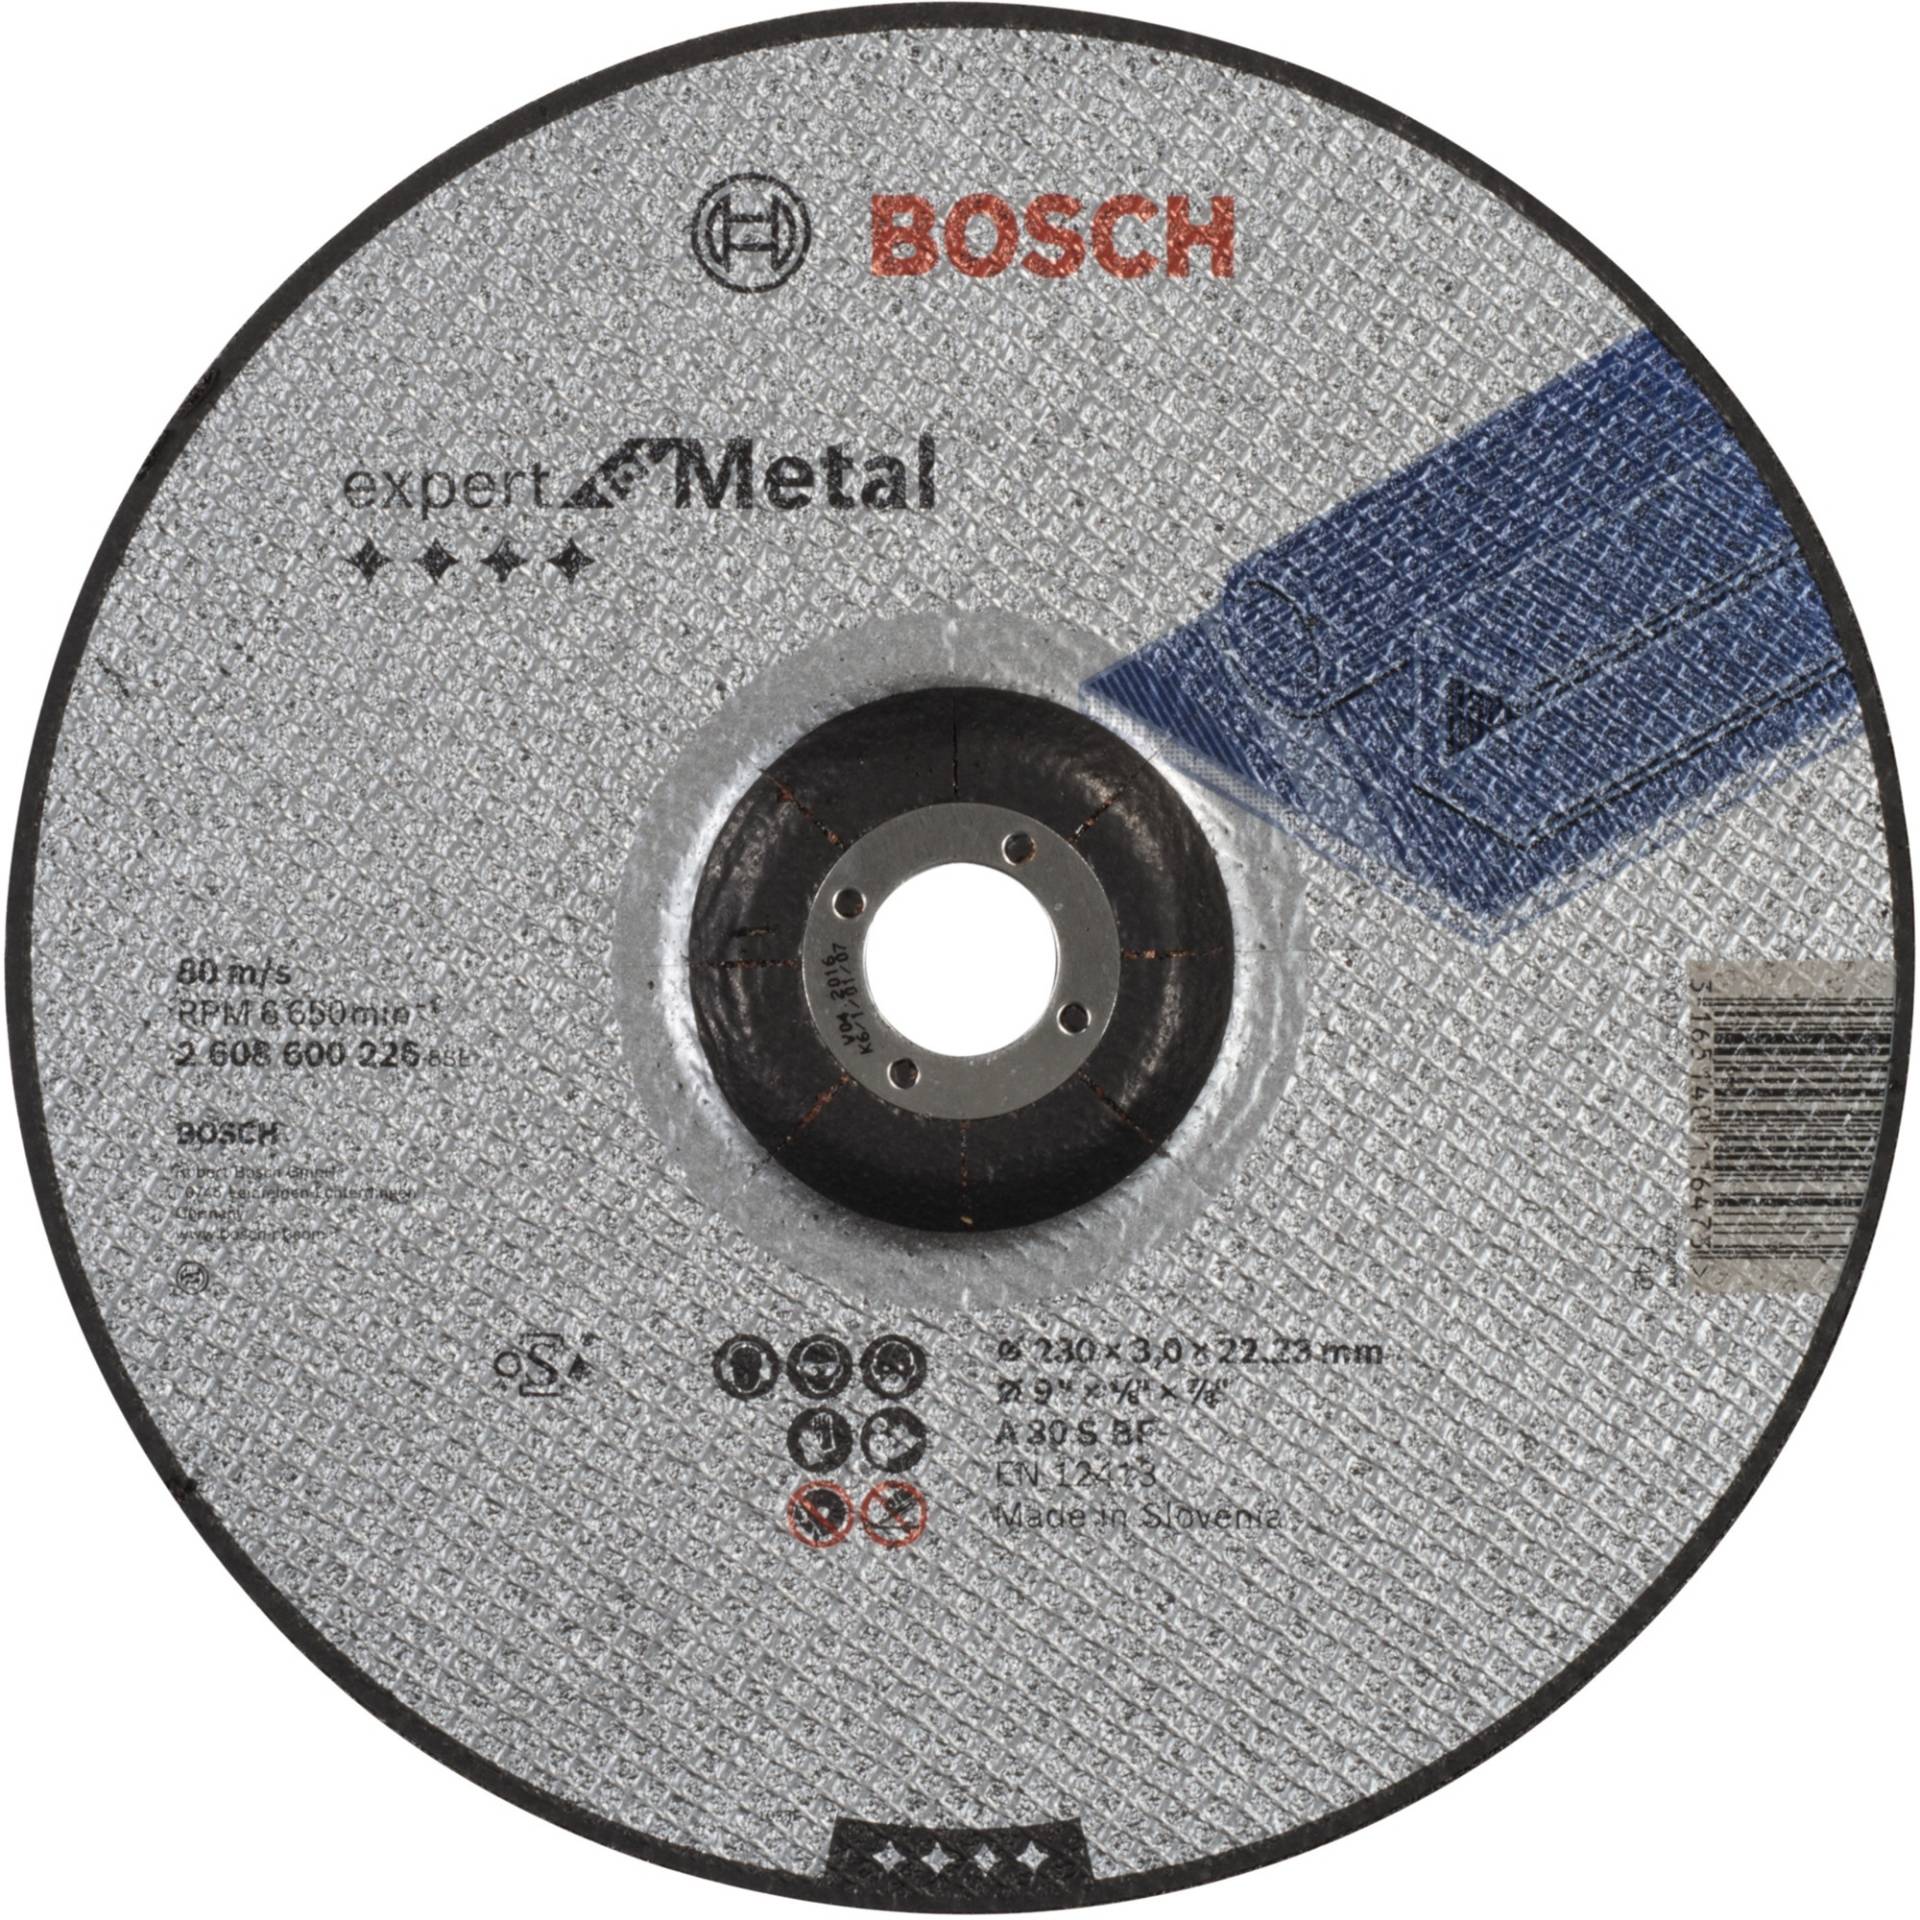 Trennscheibe Expert for Metal, Ø 230mm von Bosch